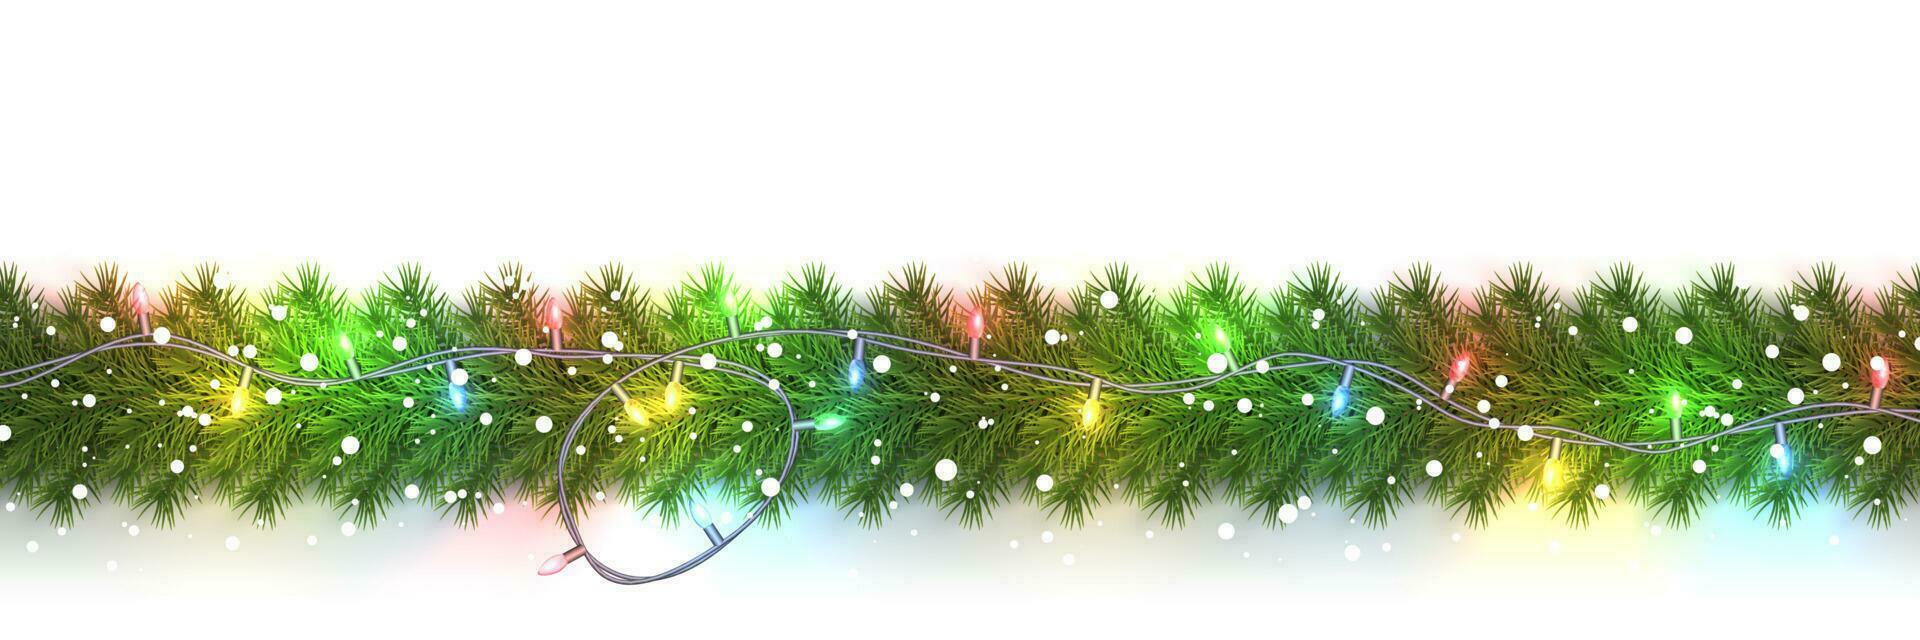 festlig jul eller ny år krans. jul träd grenar. högtider bakgrund. vektor illustration